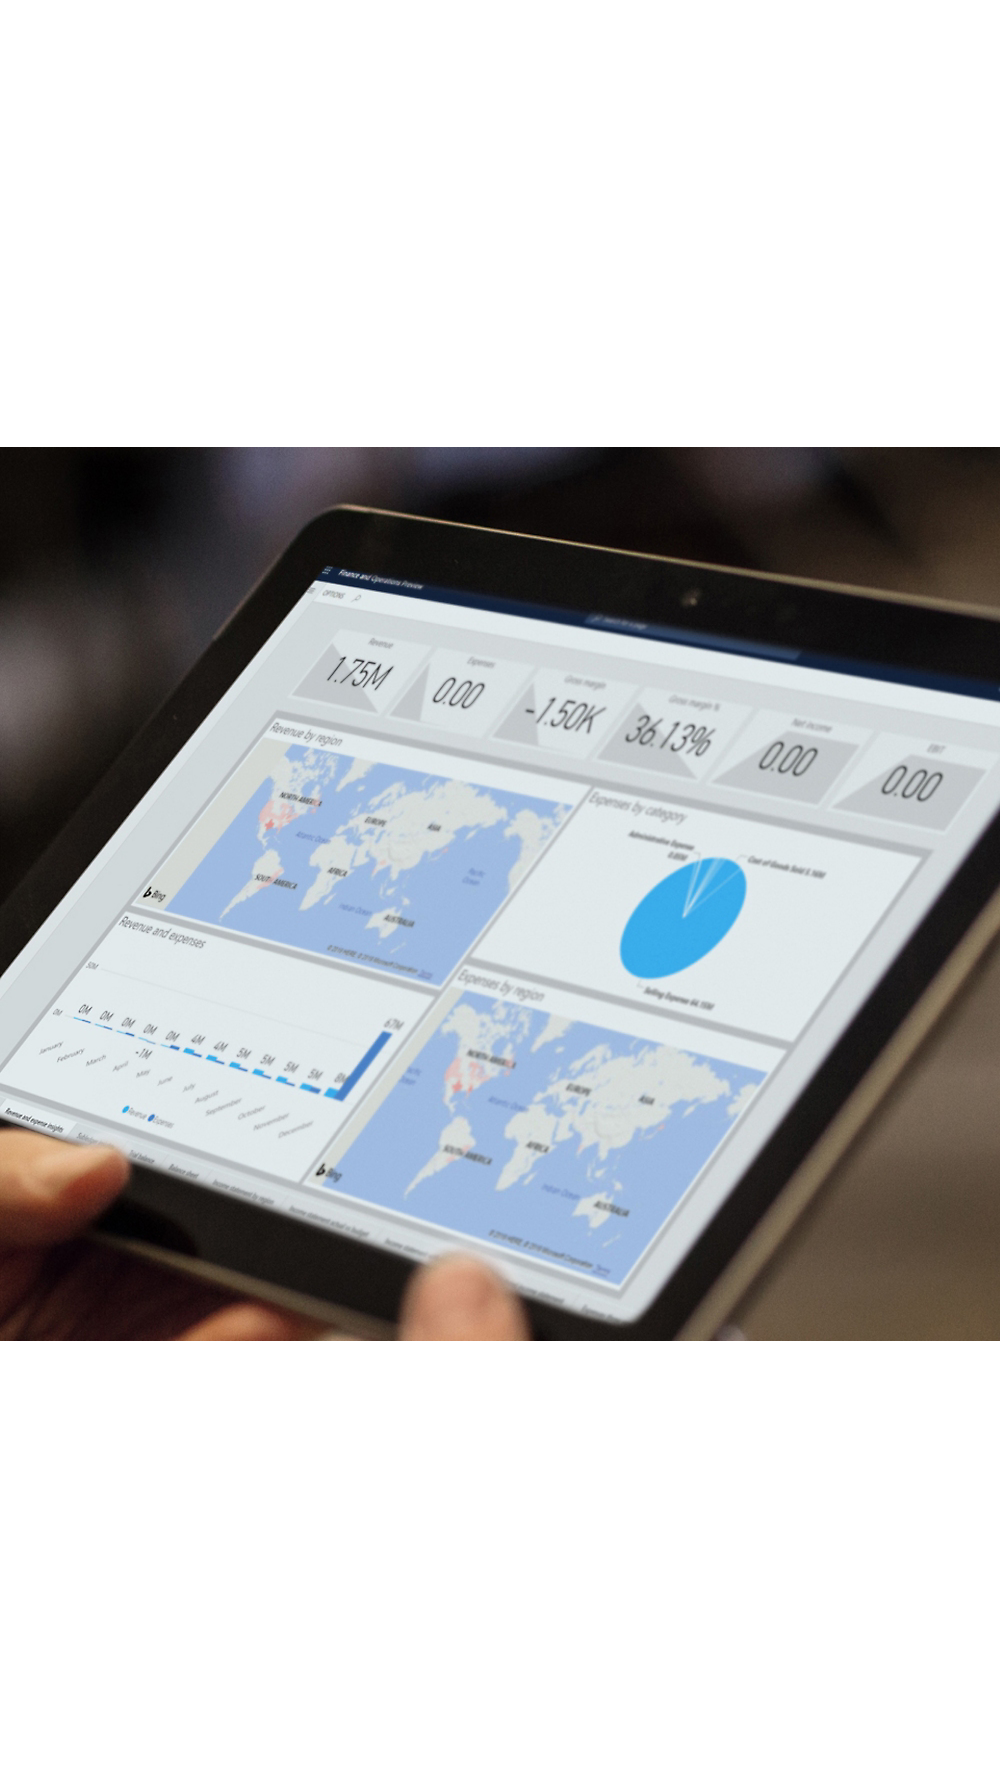 Eine Person, die ein Tablet hält, auf dem Analysediagramme anzeigt werden, einschließlich Karten und Diagramme, die globale Datenmetriken widerspiegeln.